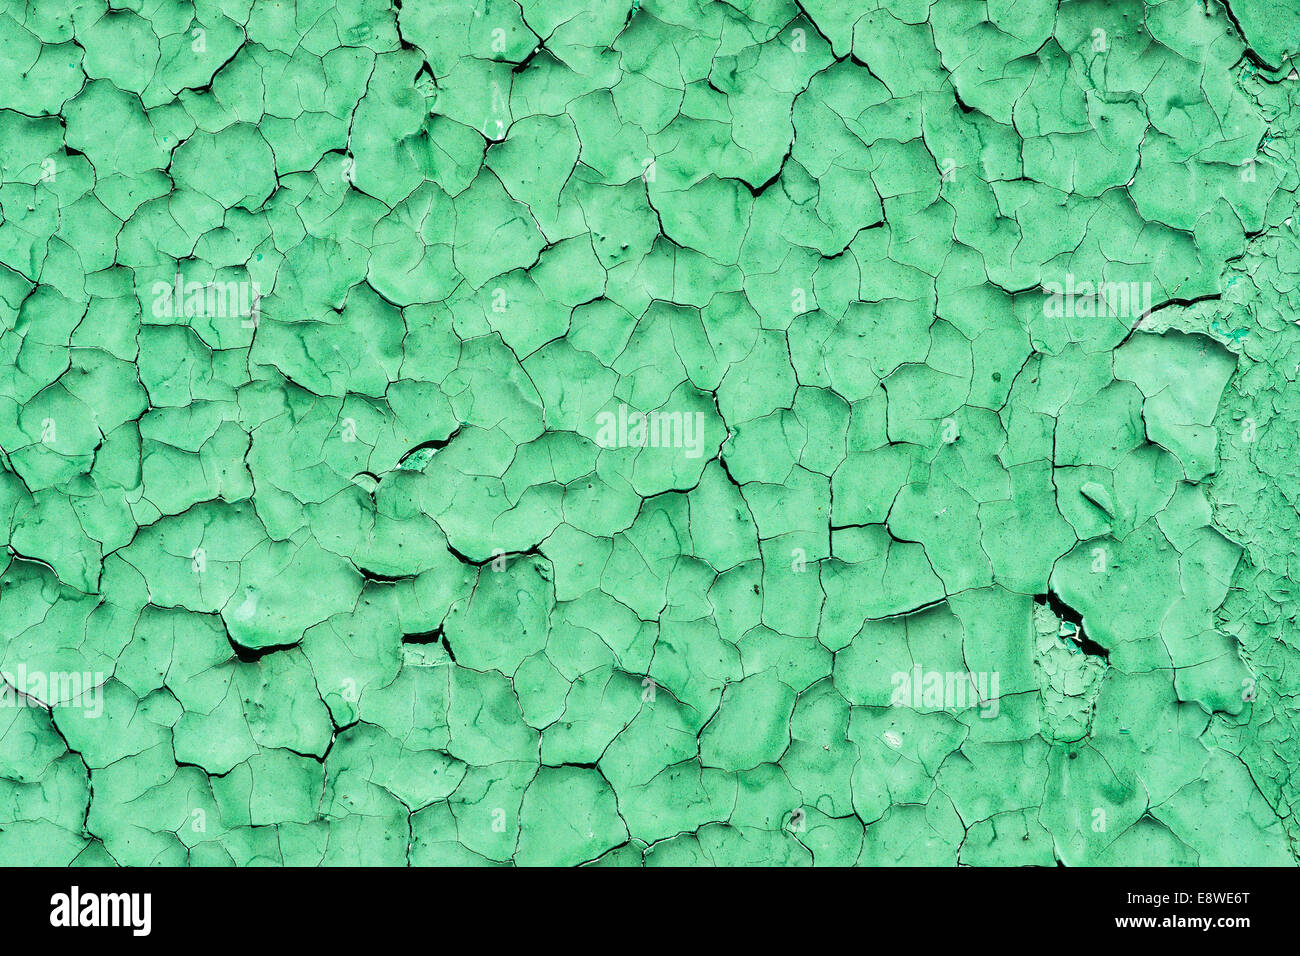 Knisterte grün malen Textur. Alt und verwittert und knisterte Oberfläche grün lackiert Stockfoto